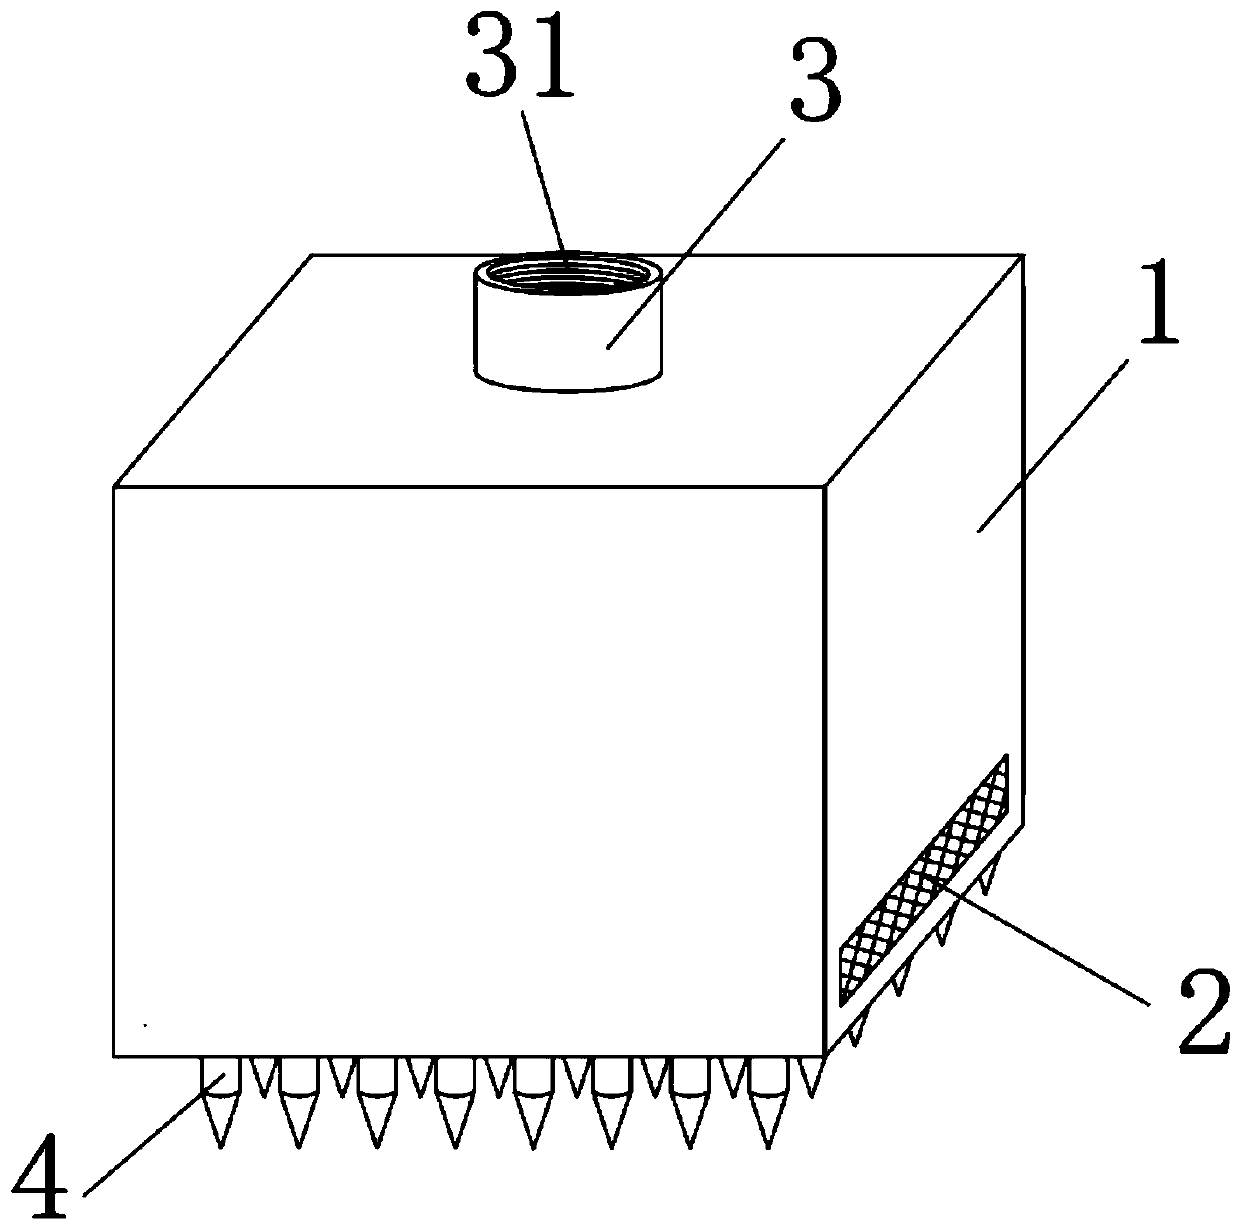 Embedded fertilizer box for melia azedarach